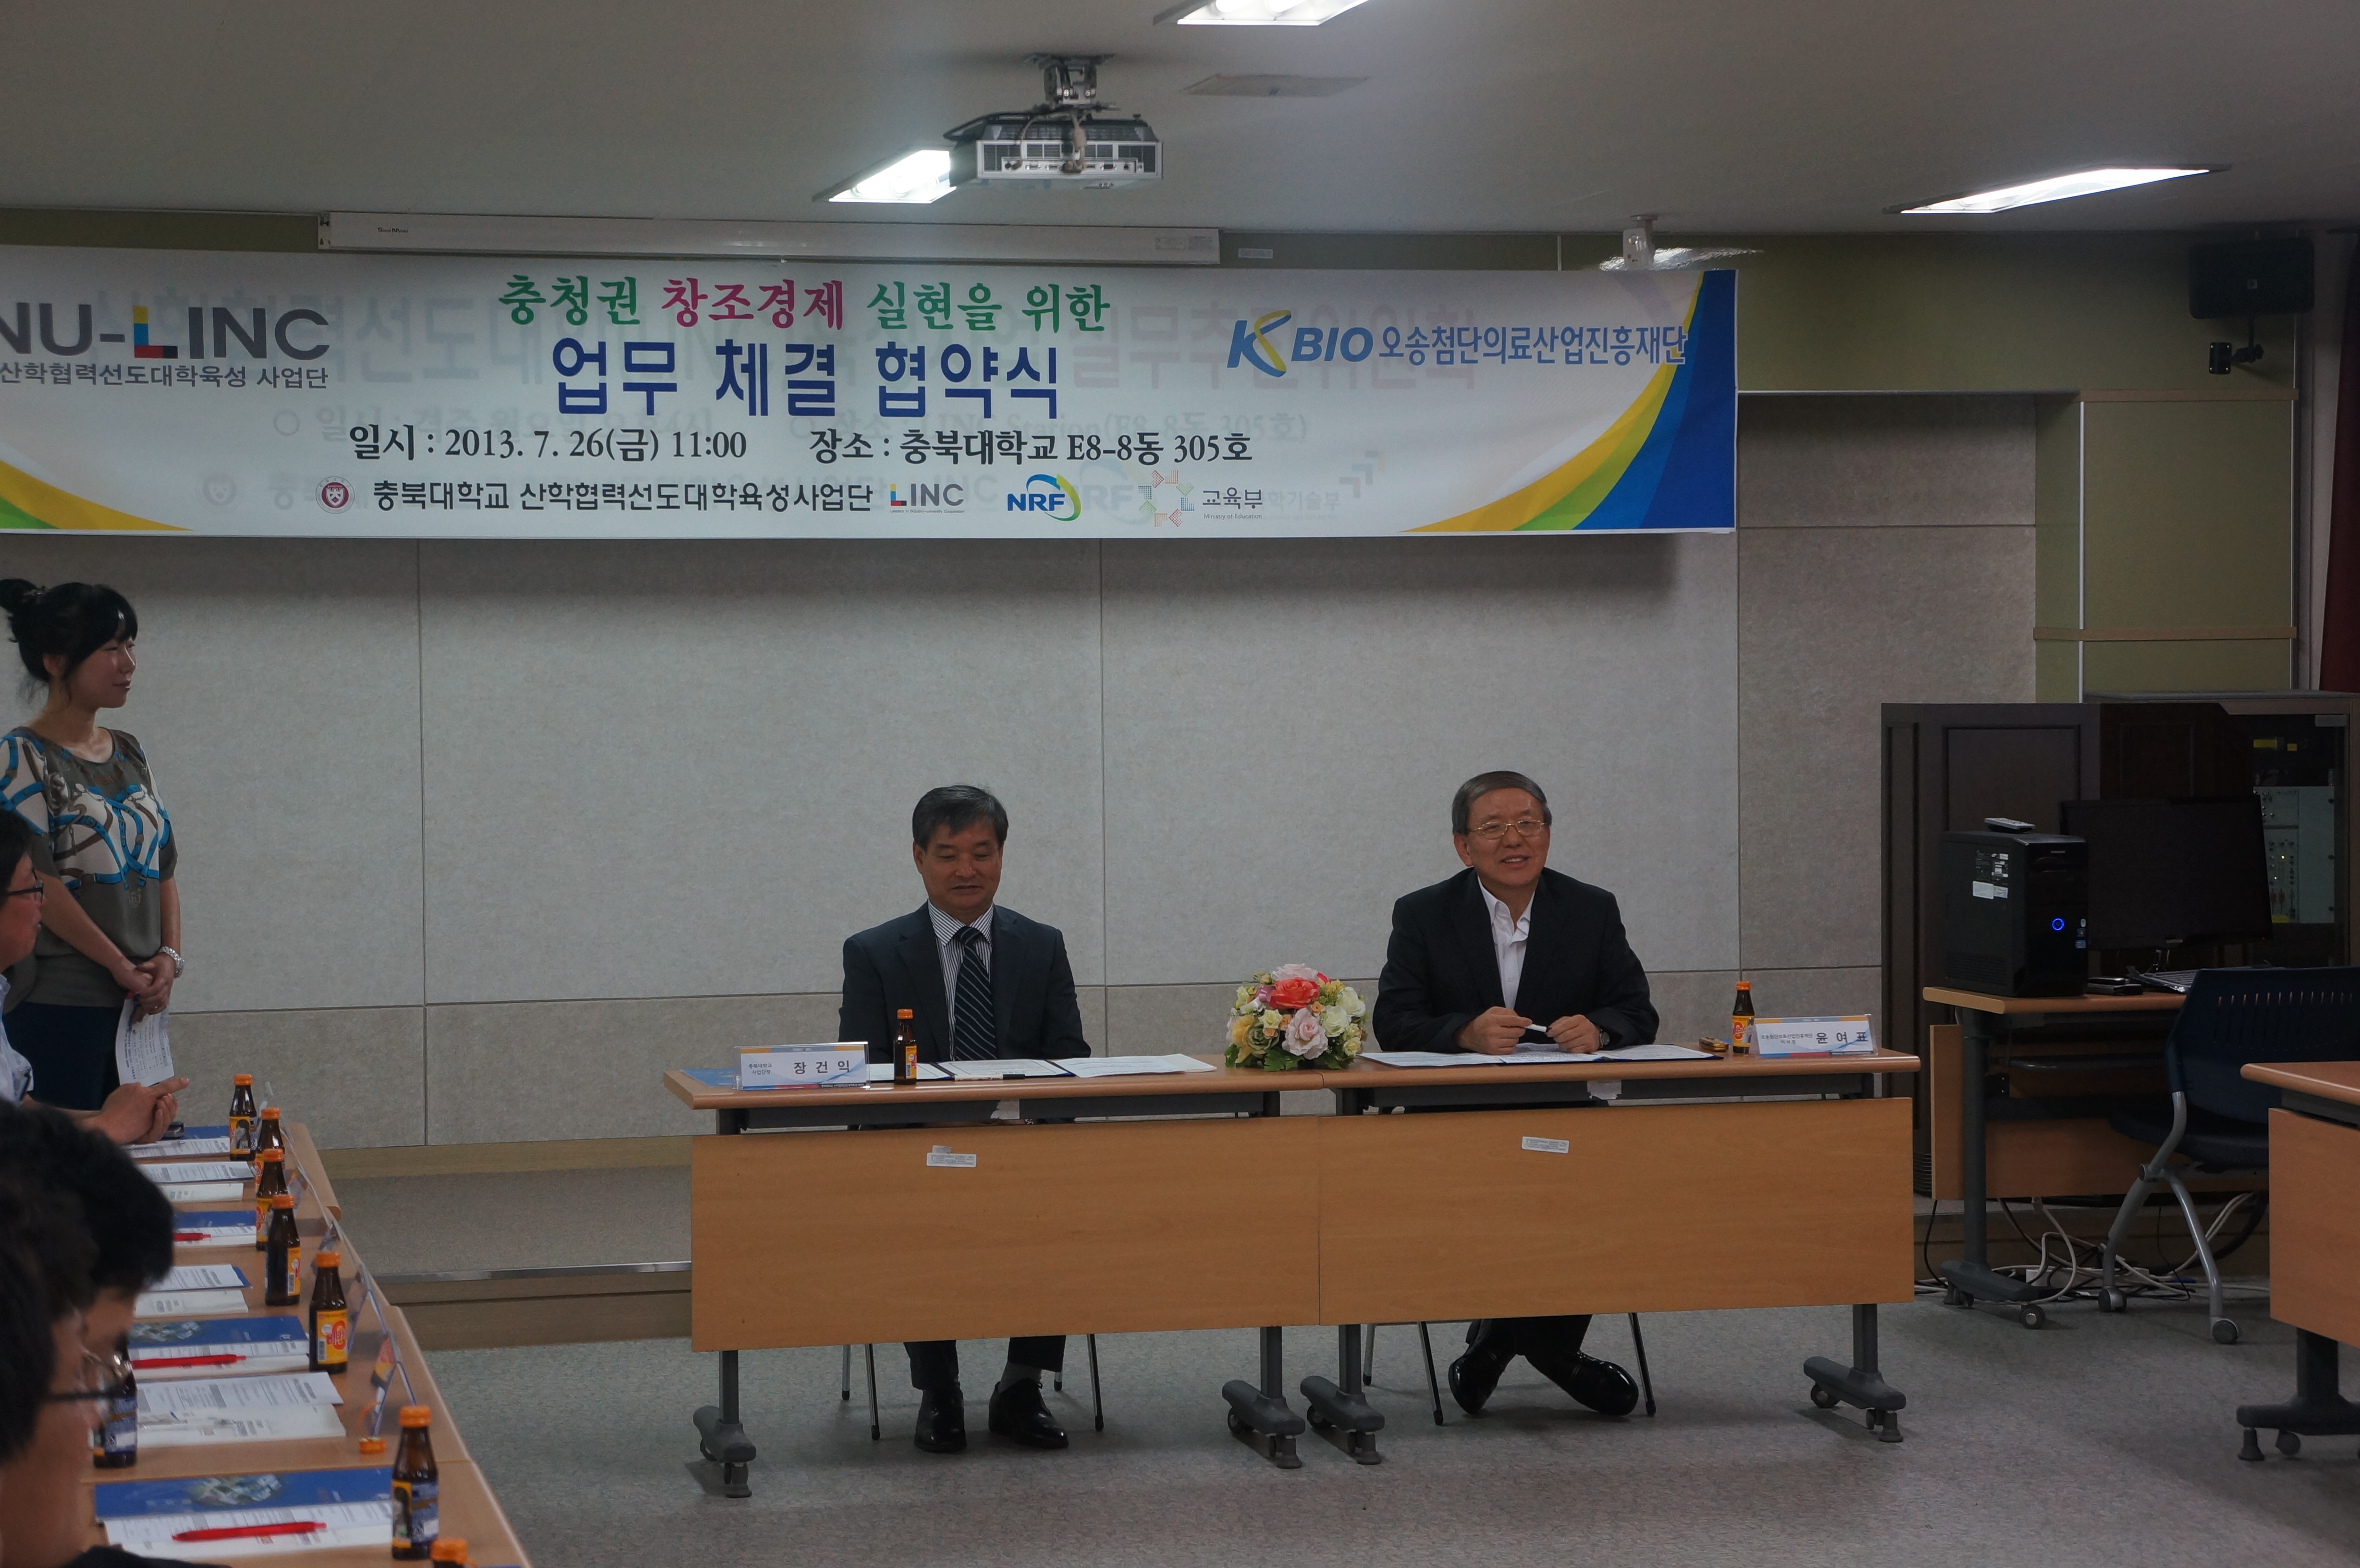 오송첨복재단, 충북대LINC사업단과 업무협약체결(2013.7.26)